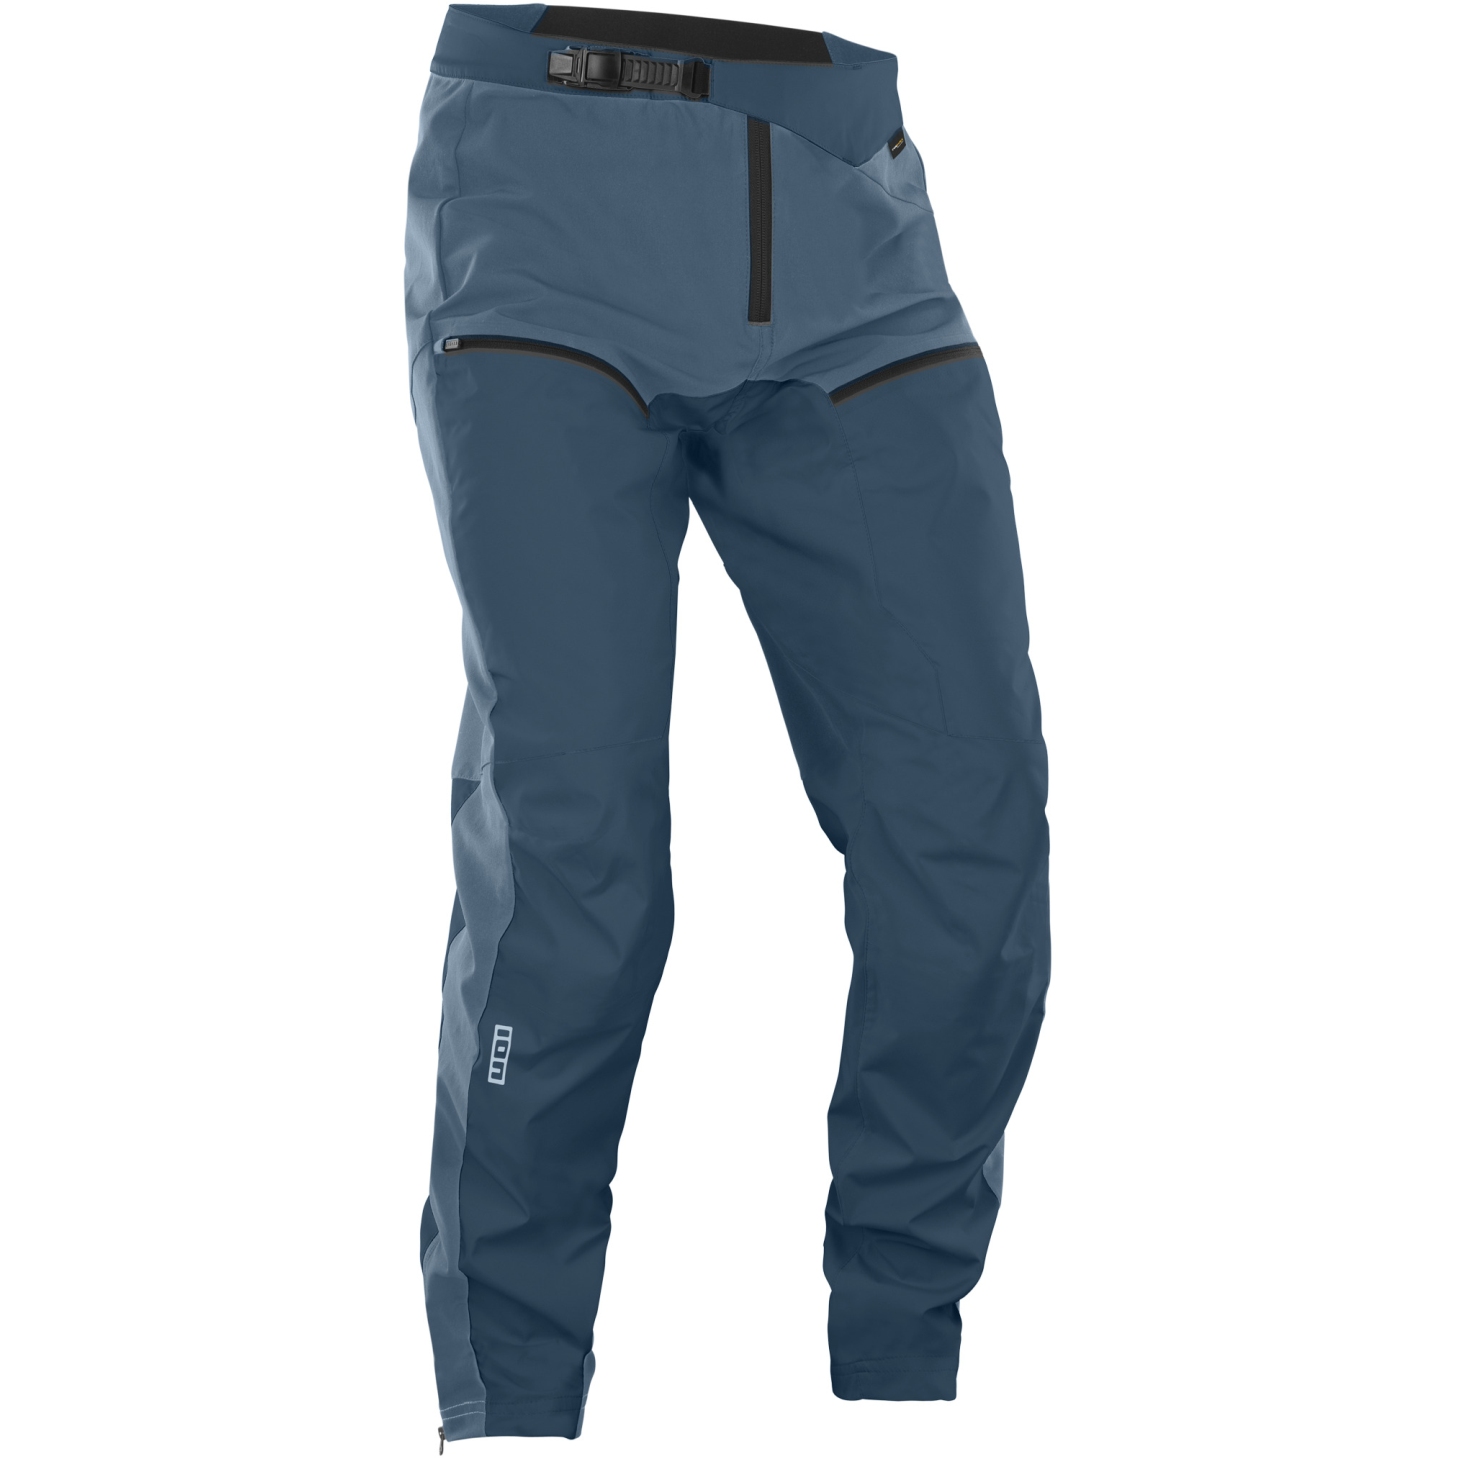 Imagen de ION Bike Outerwear 3 Capas Pantalones Híbrida - Shelter - Cosmic Blue